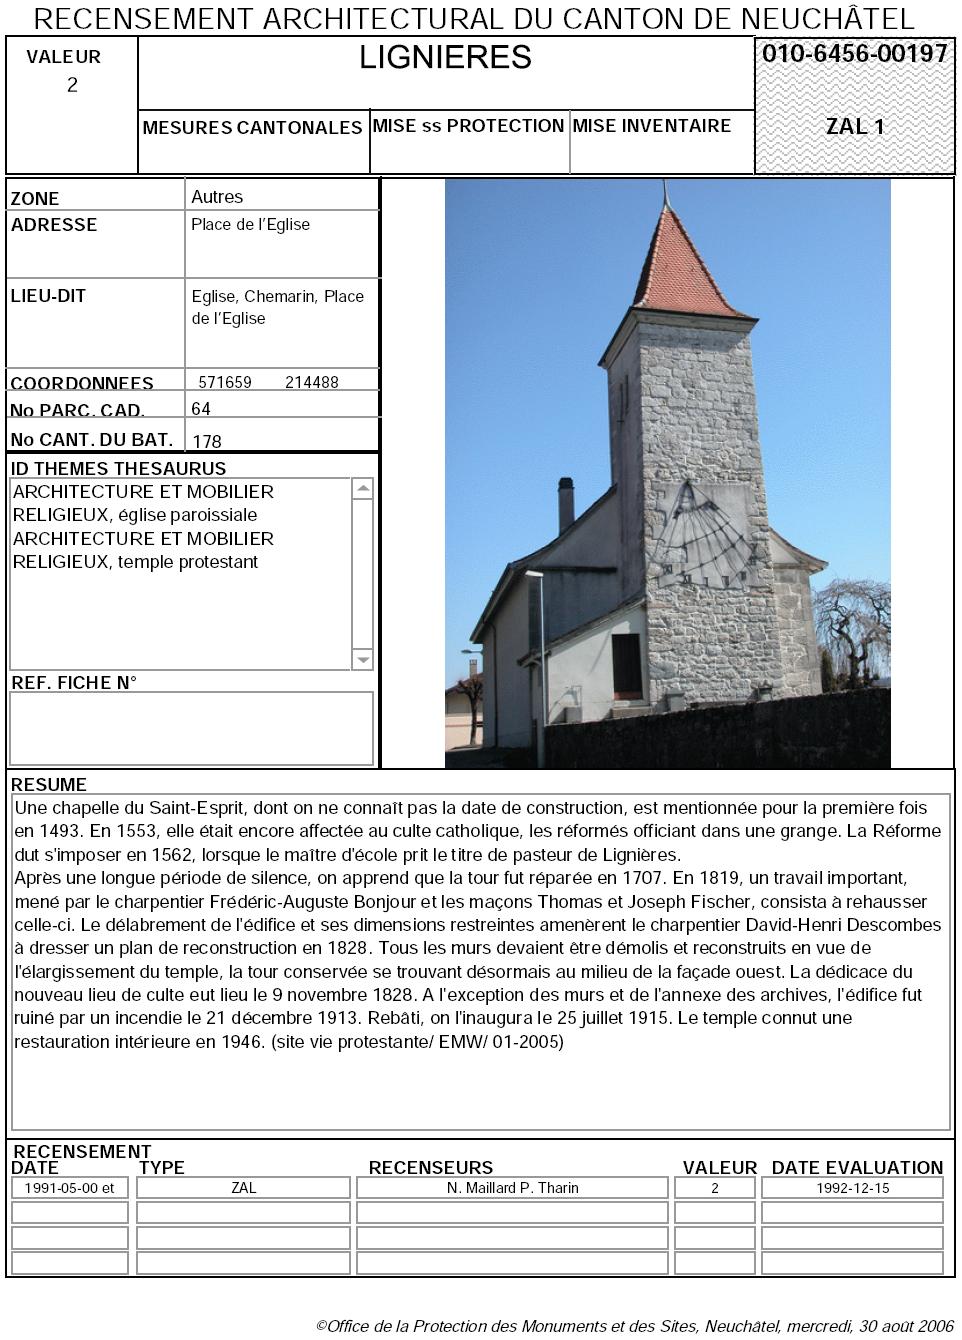 Recensement architectural du canton de Neuchâtel: Fiche 010-6456-00197